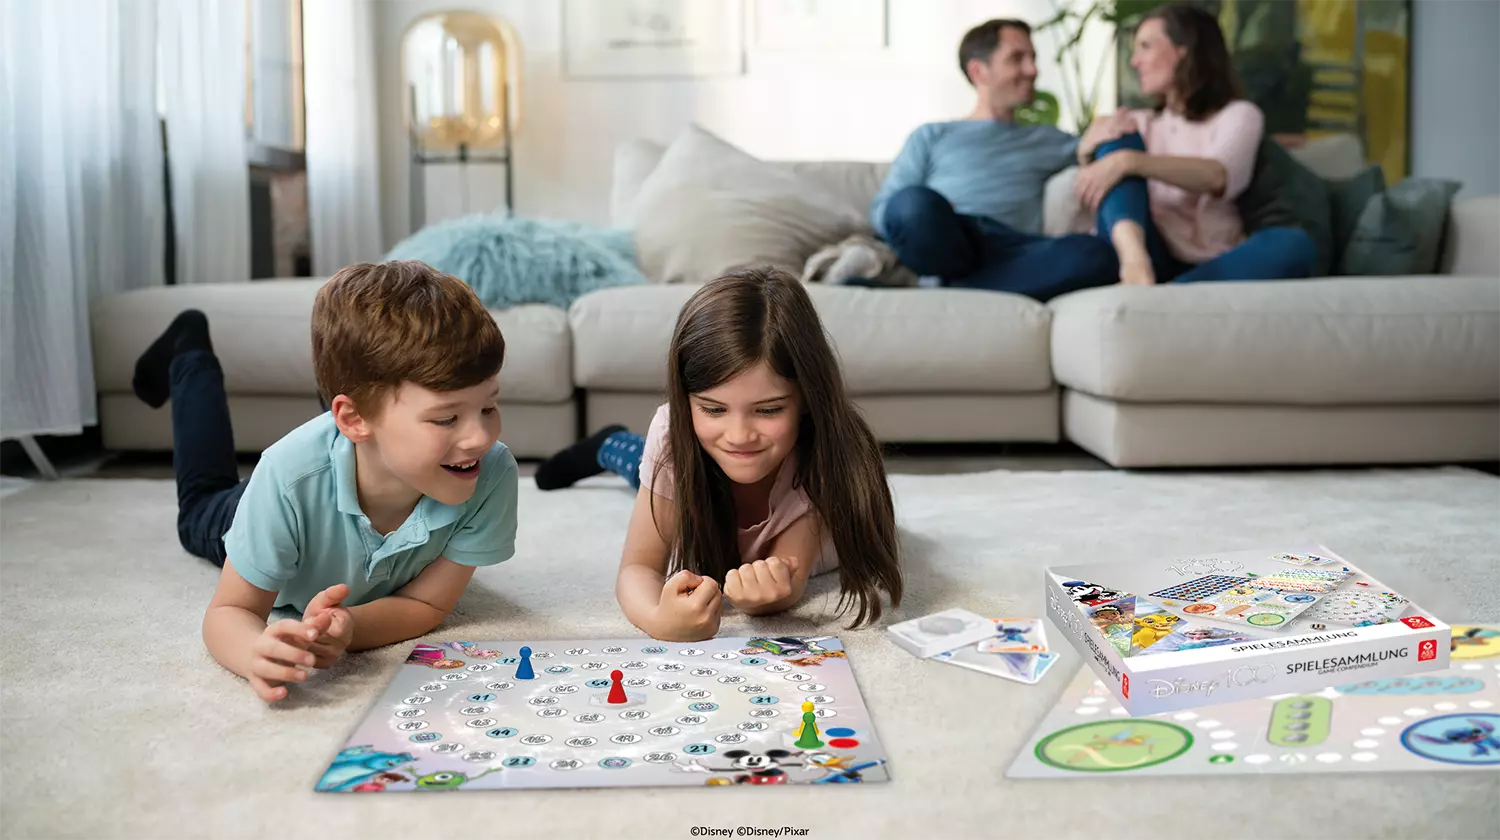 Auf dem Bild sind zwei Kinder zu sehen, die mit der Disney 100 Spielesammlung spielen.